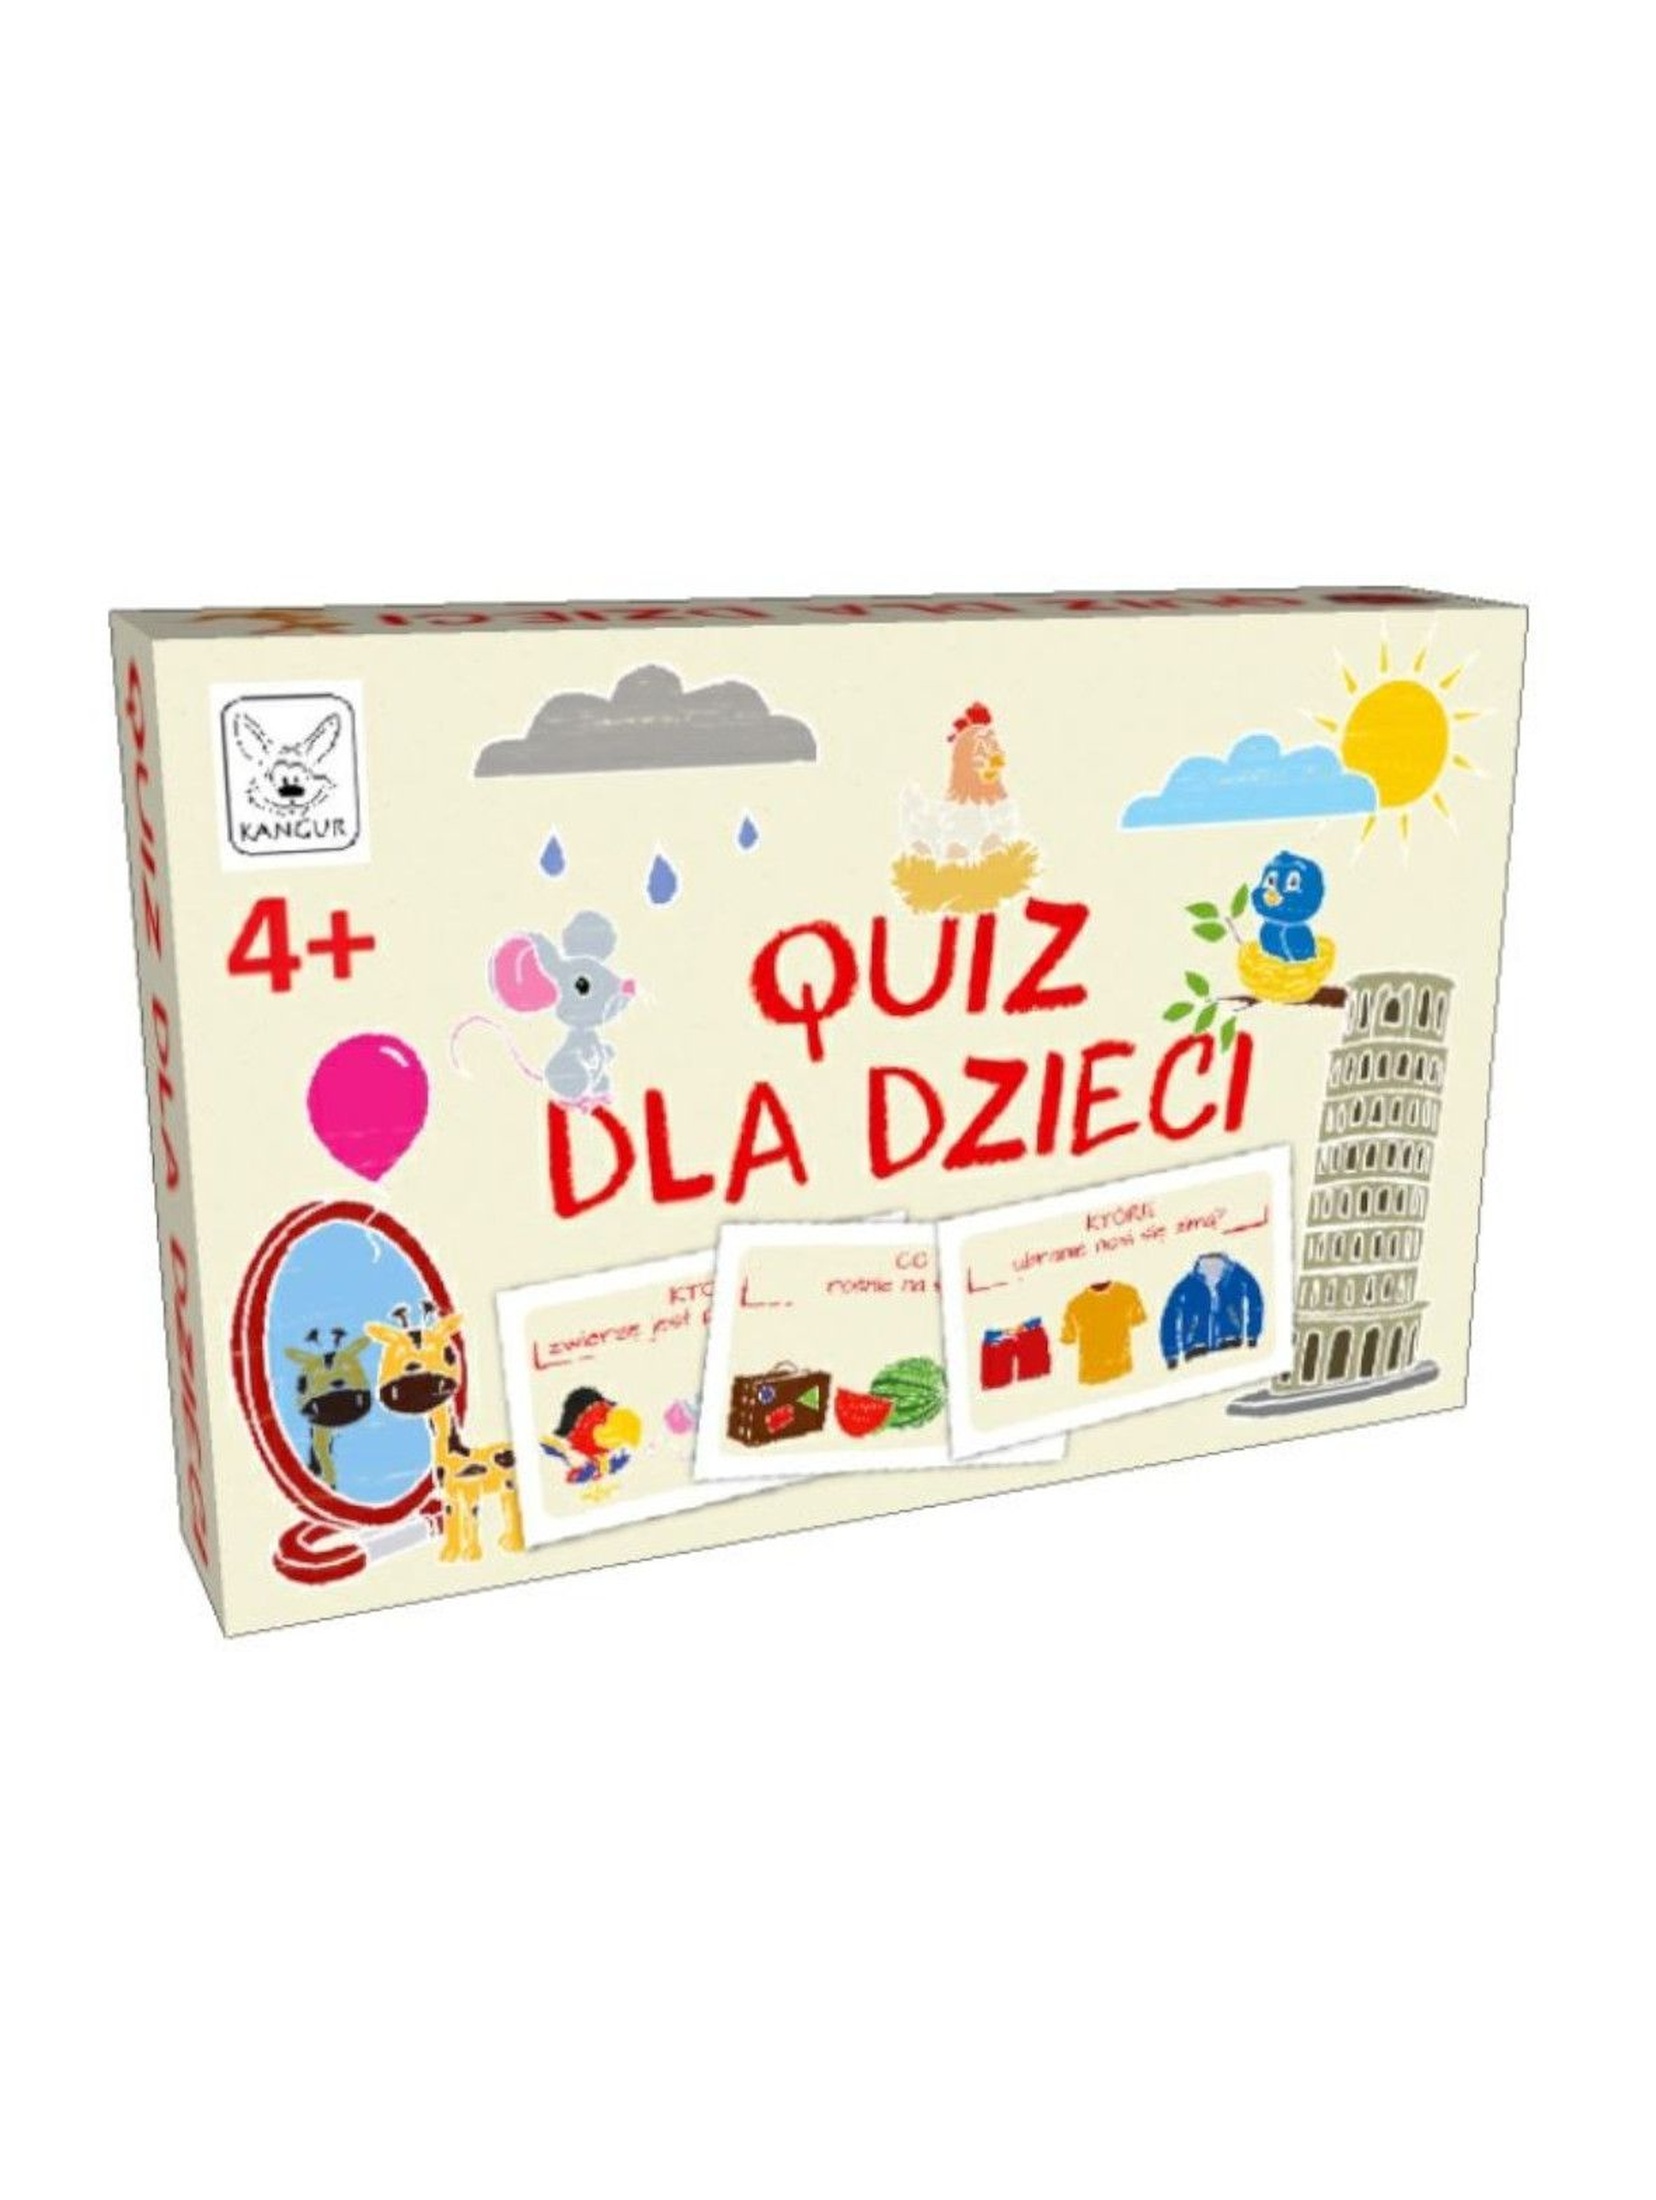 Gra dla dzieci - Quiz dla dzieci  wiek 4+